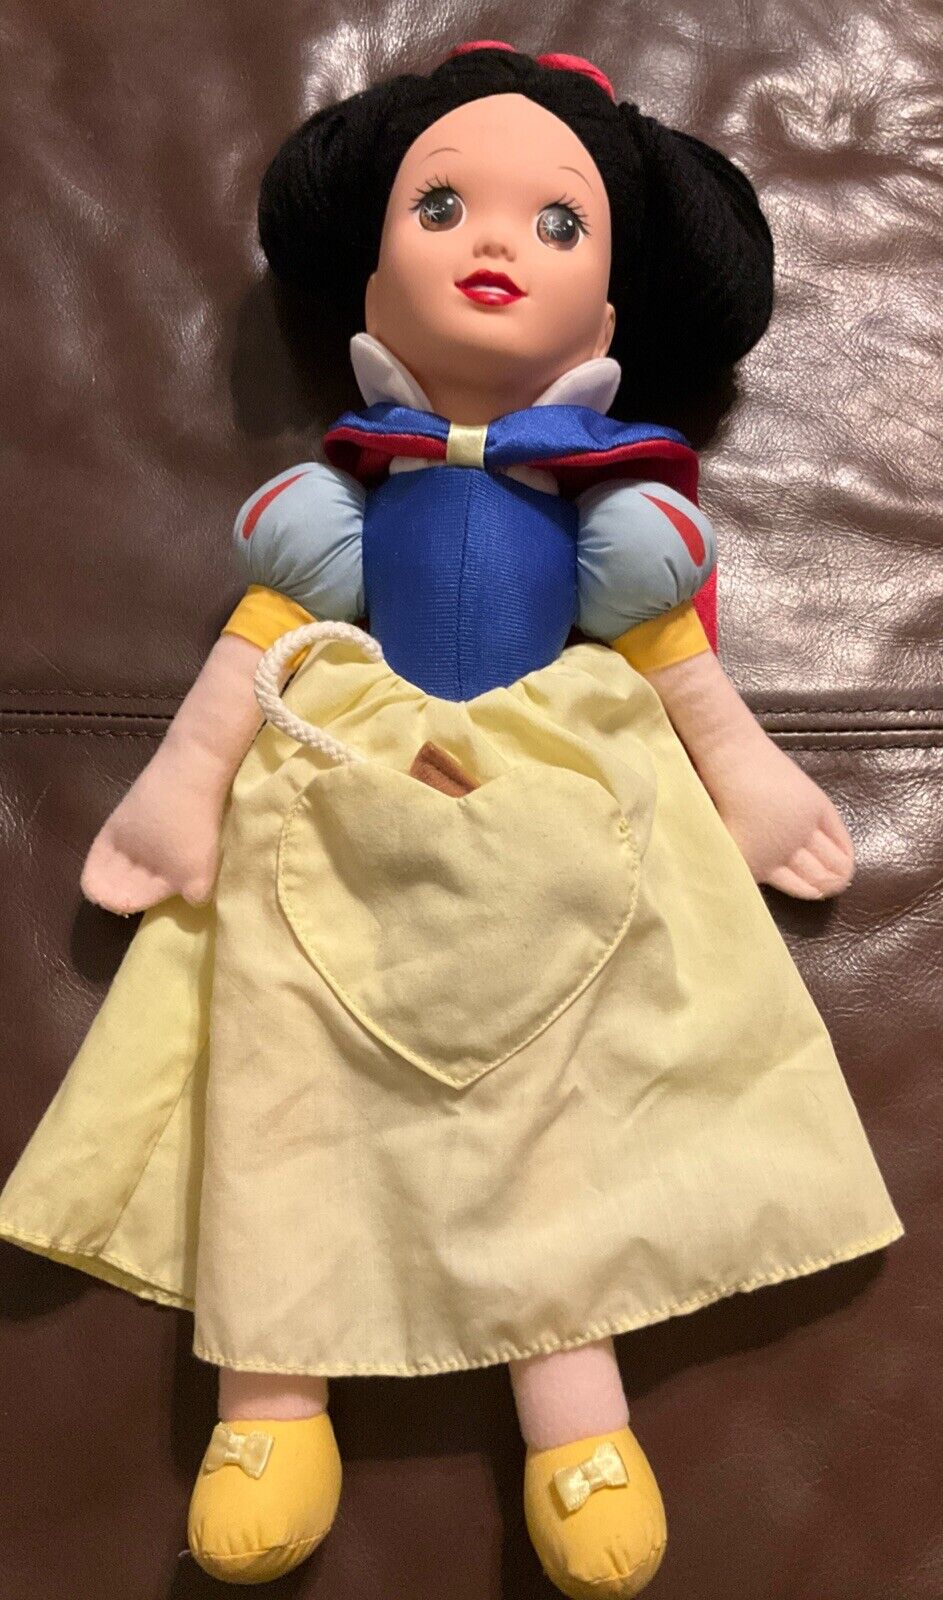 Vintage 1993 Disney Princess Snow White Stuffed Plush Doll Mattel Yellow Dress